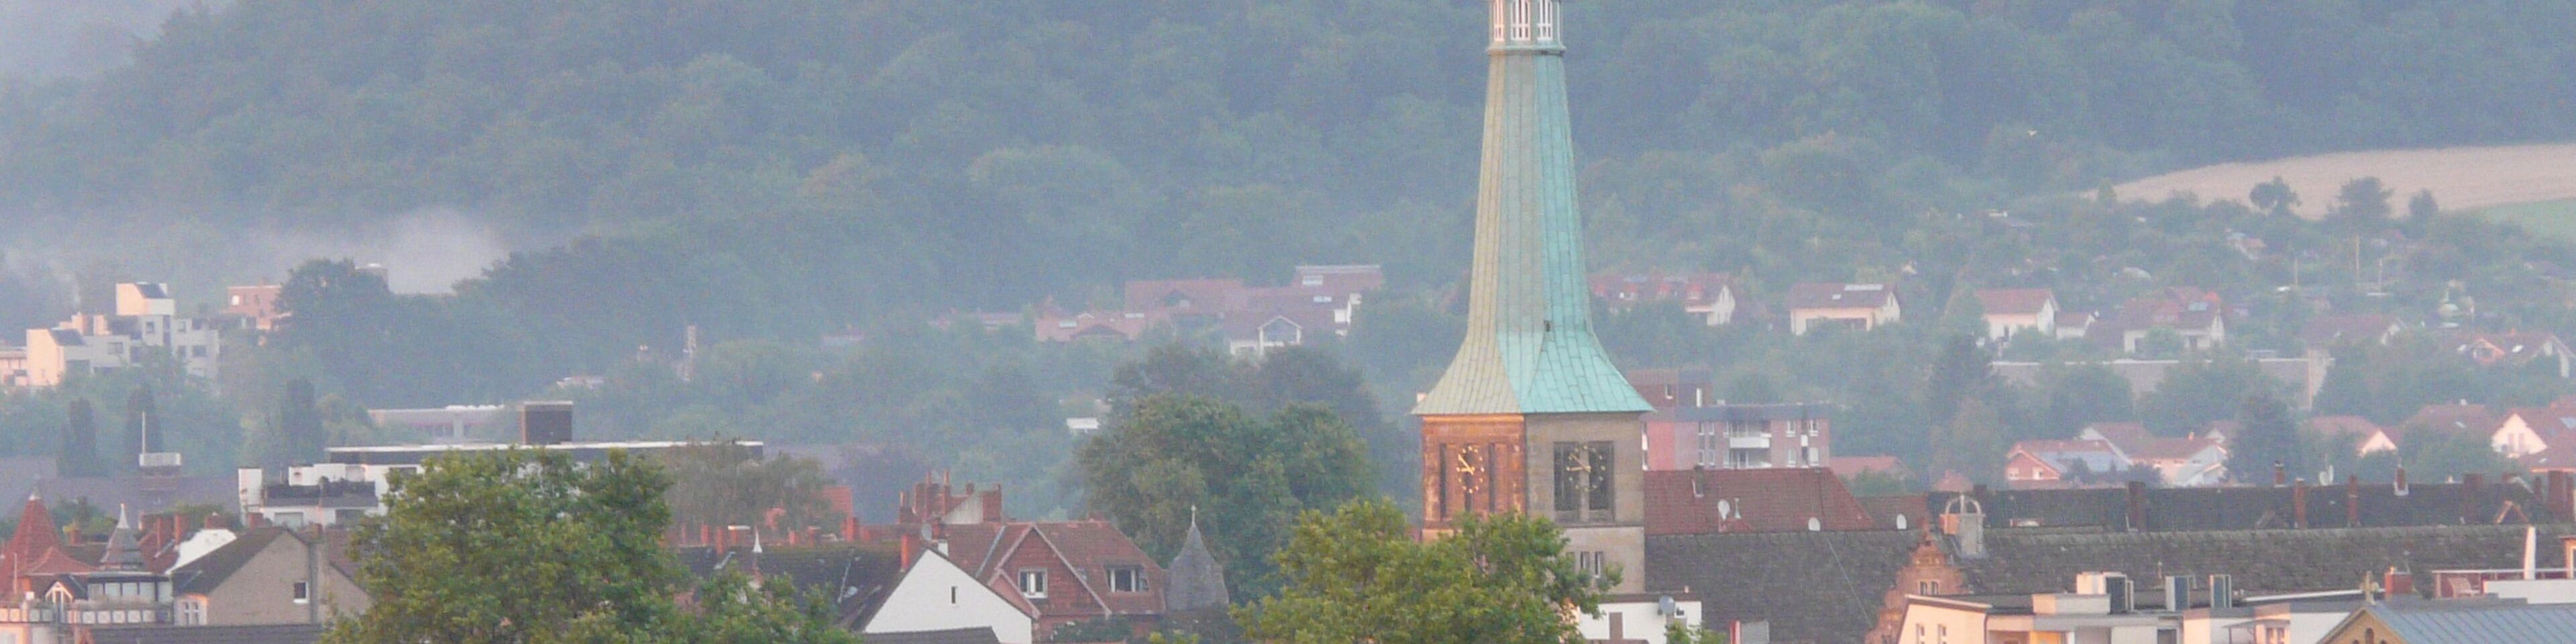 Blick vom Klüt auf die Marktkirche